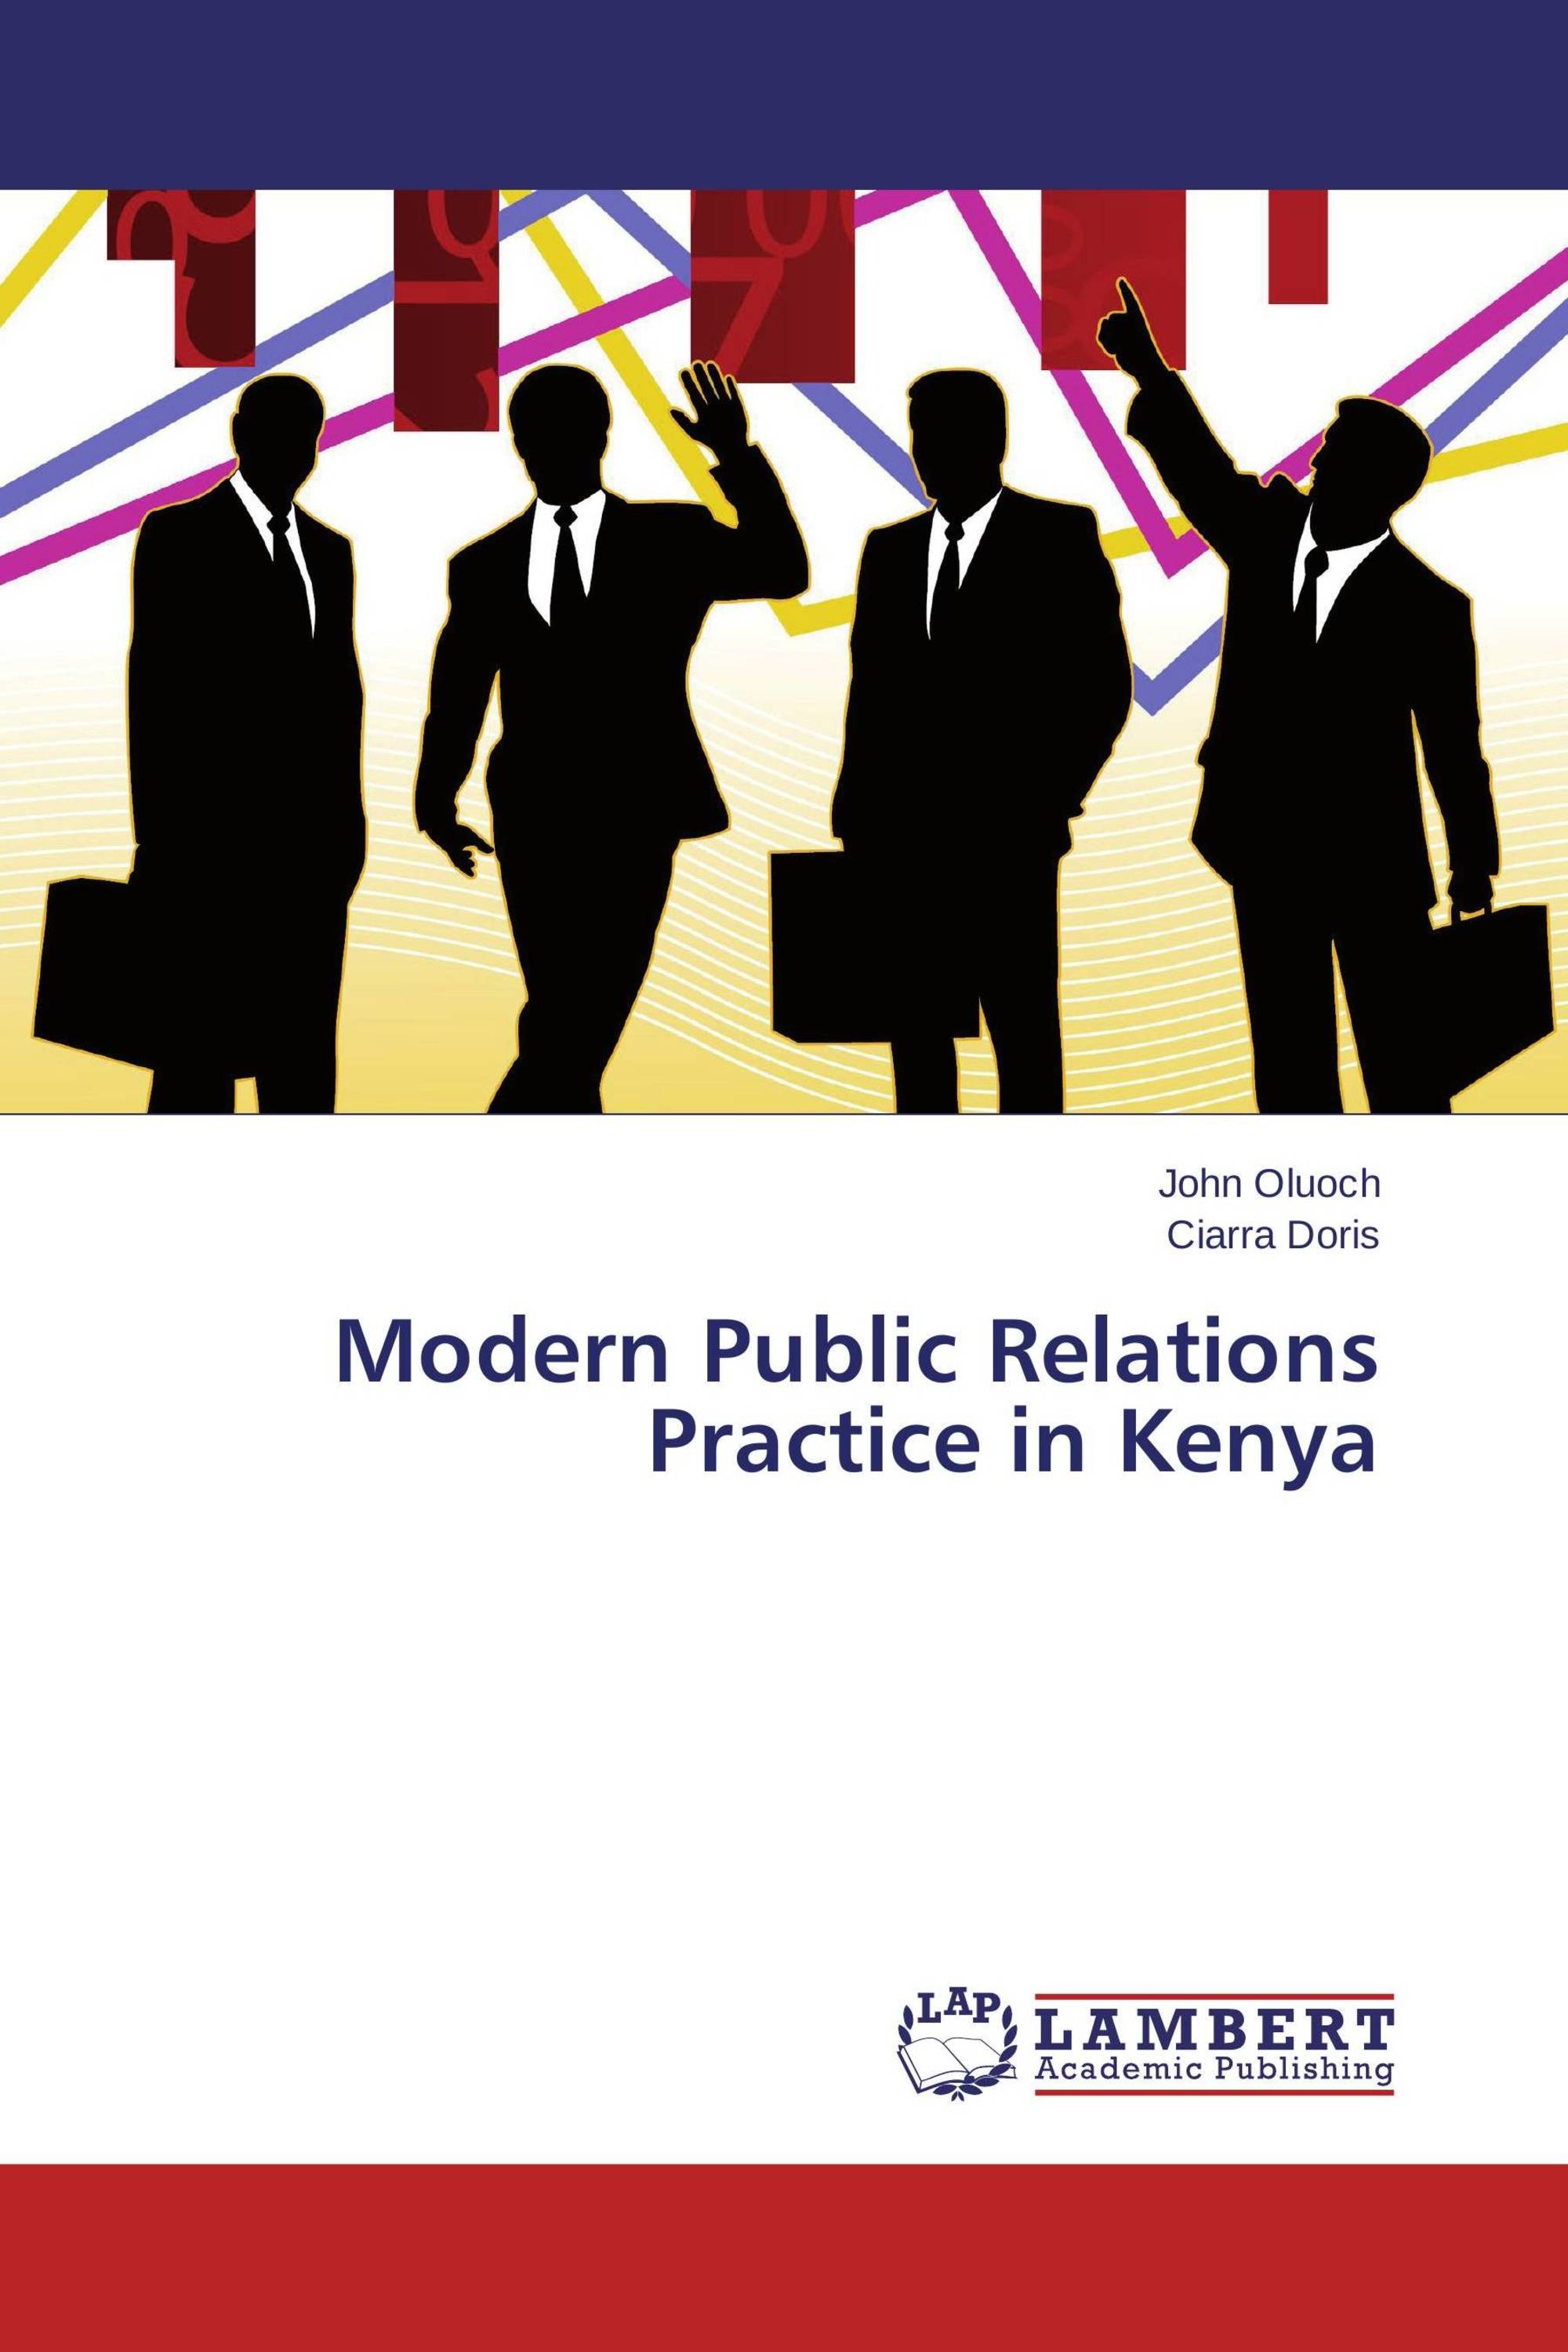 Public relations jobs in kenya october 2013